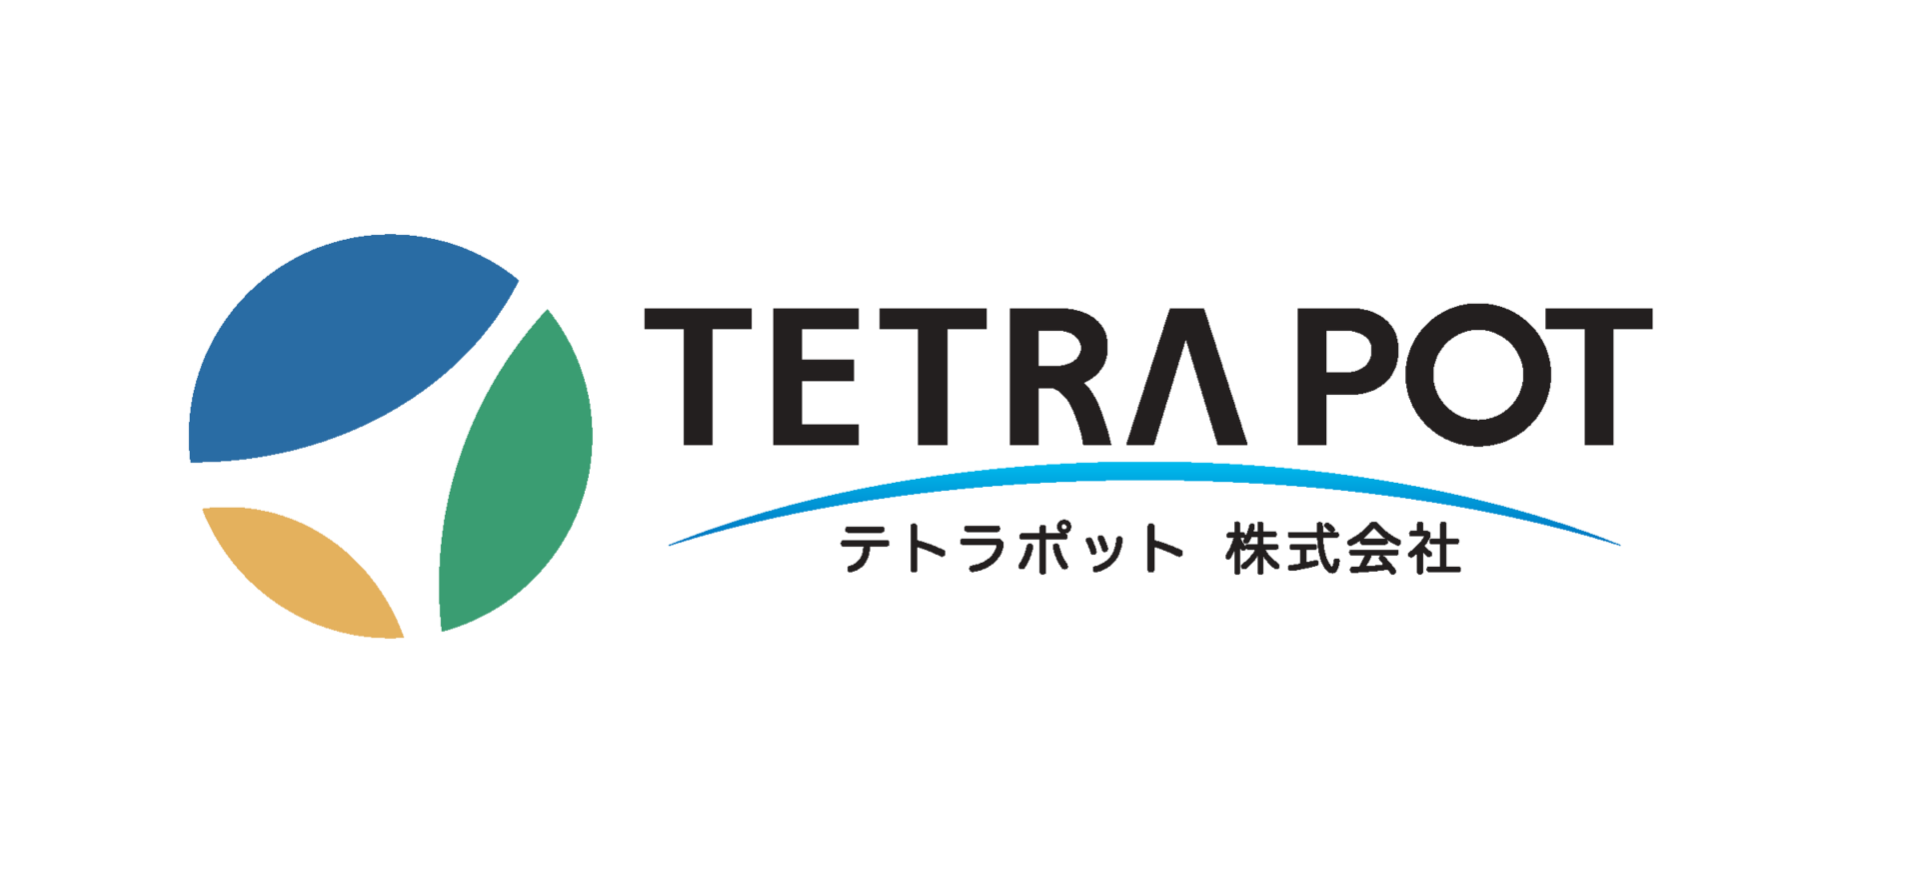 ユニフォームスポンサー（袖）
TETRAPOT株式会社